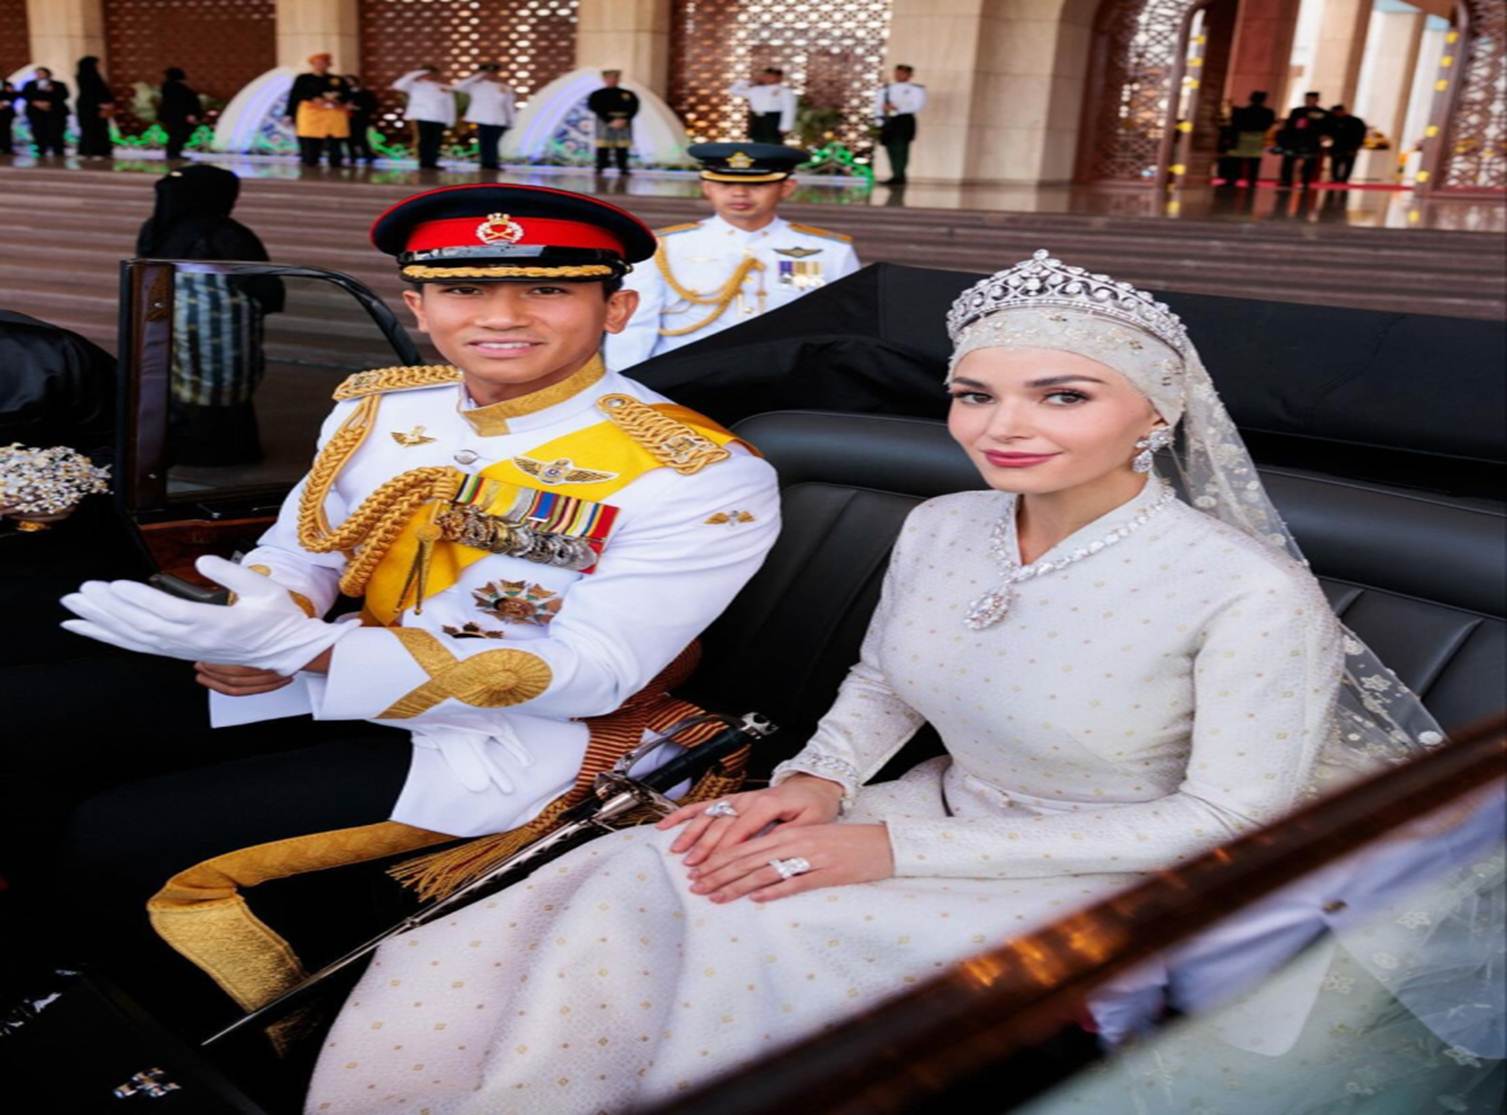 Hoàng tử tỷ đô Brunei thu hút 7 triệu người chỉ qua một ánh mắt nhìn vợ, đám cưới xa hoa tựa cổ tích lọt top tìm kiếm-5